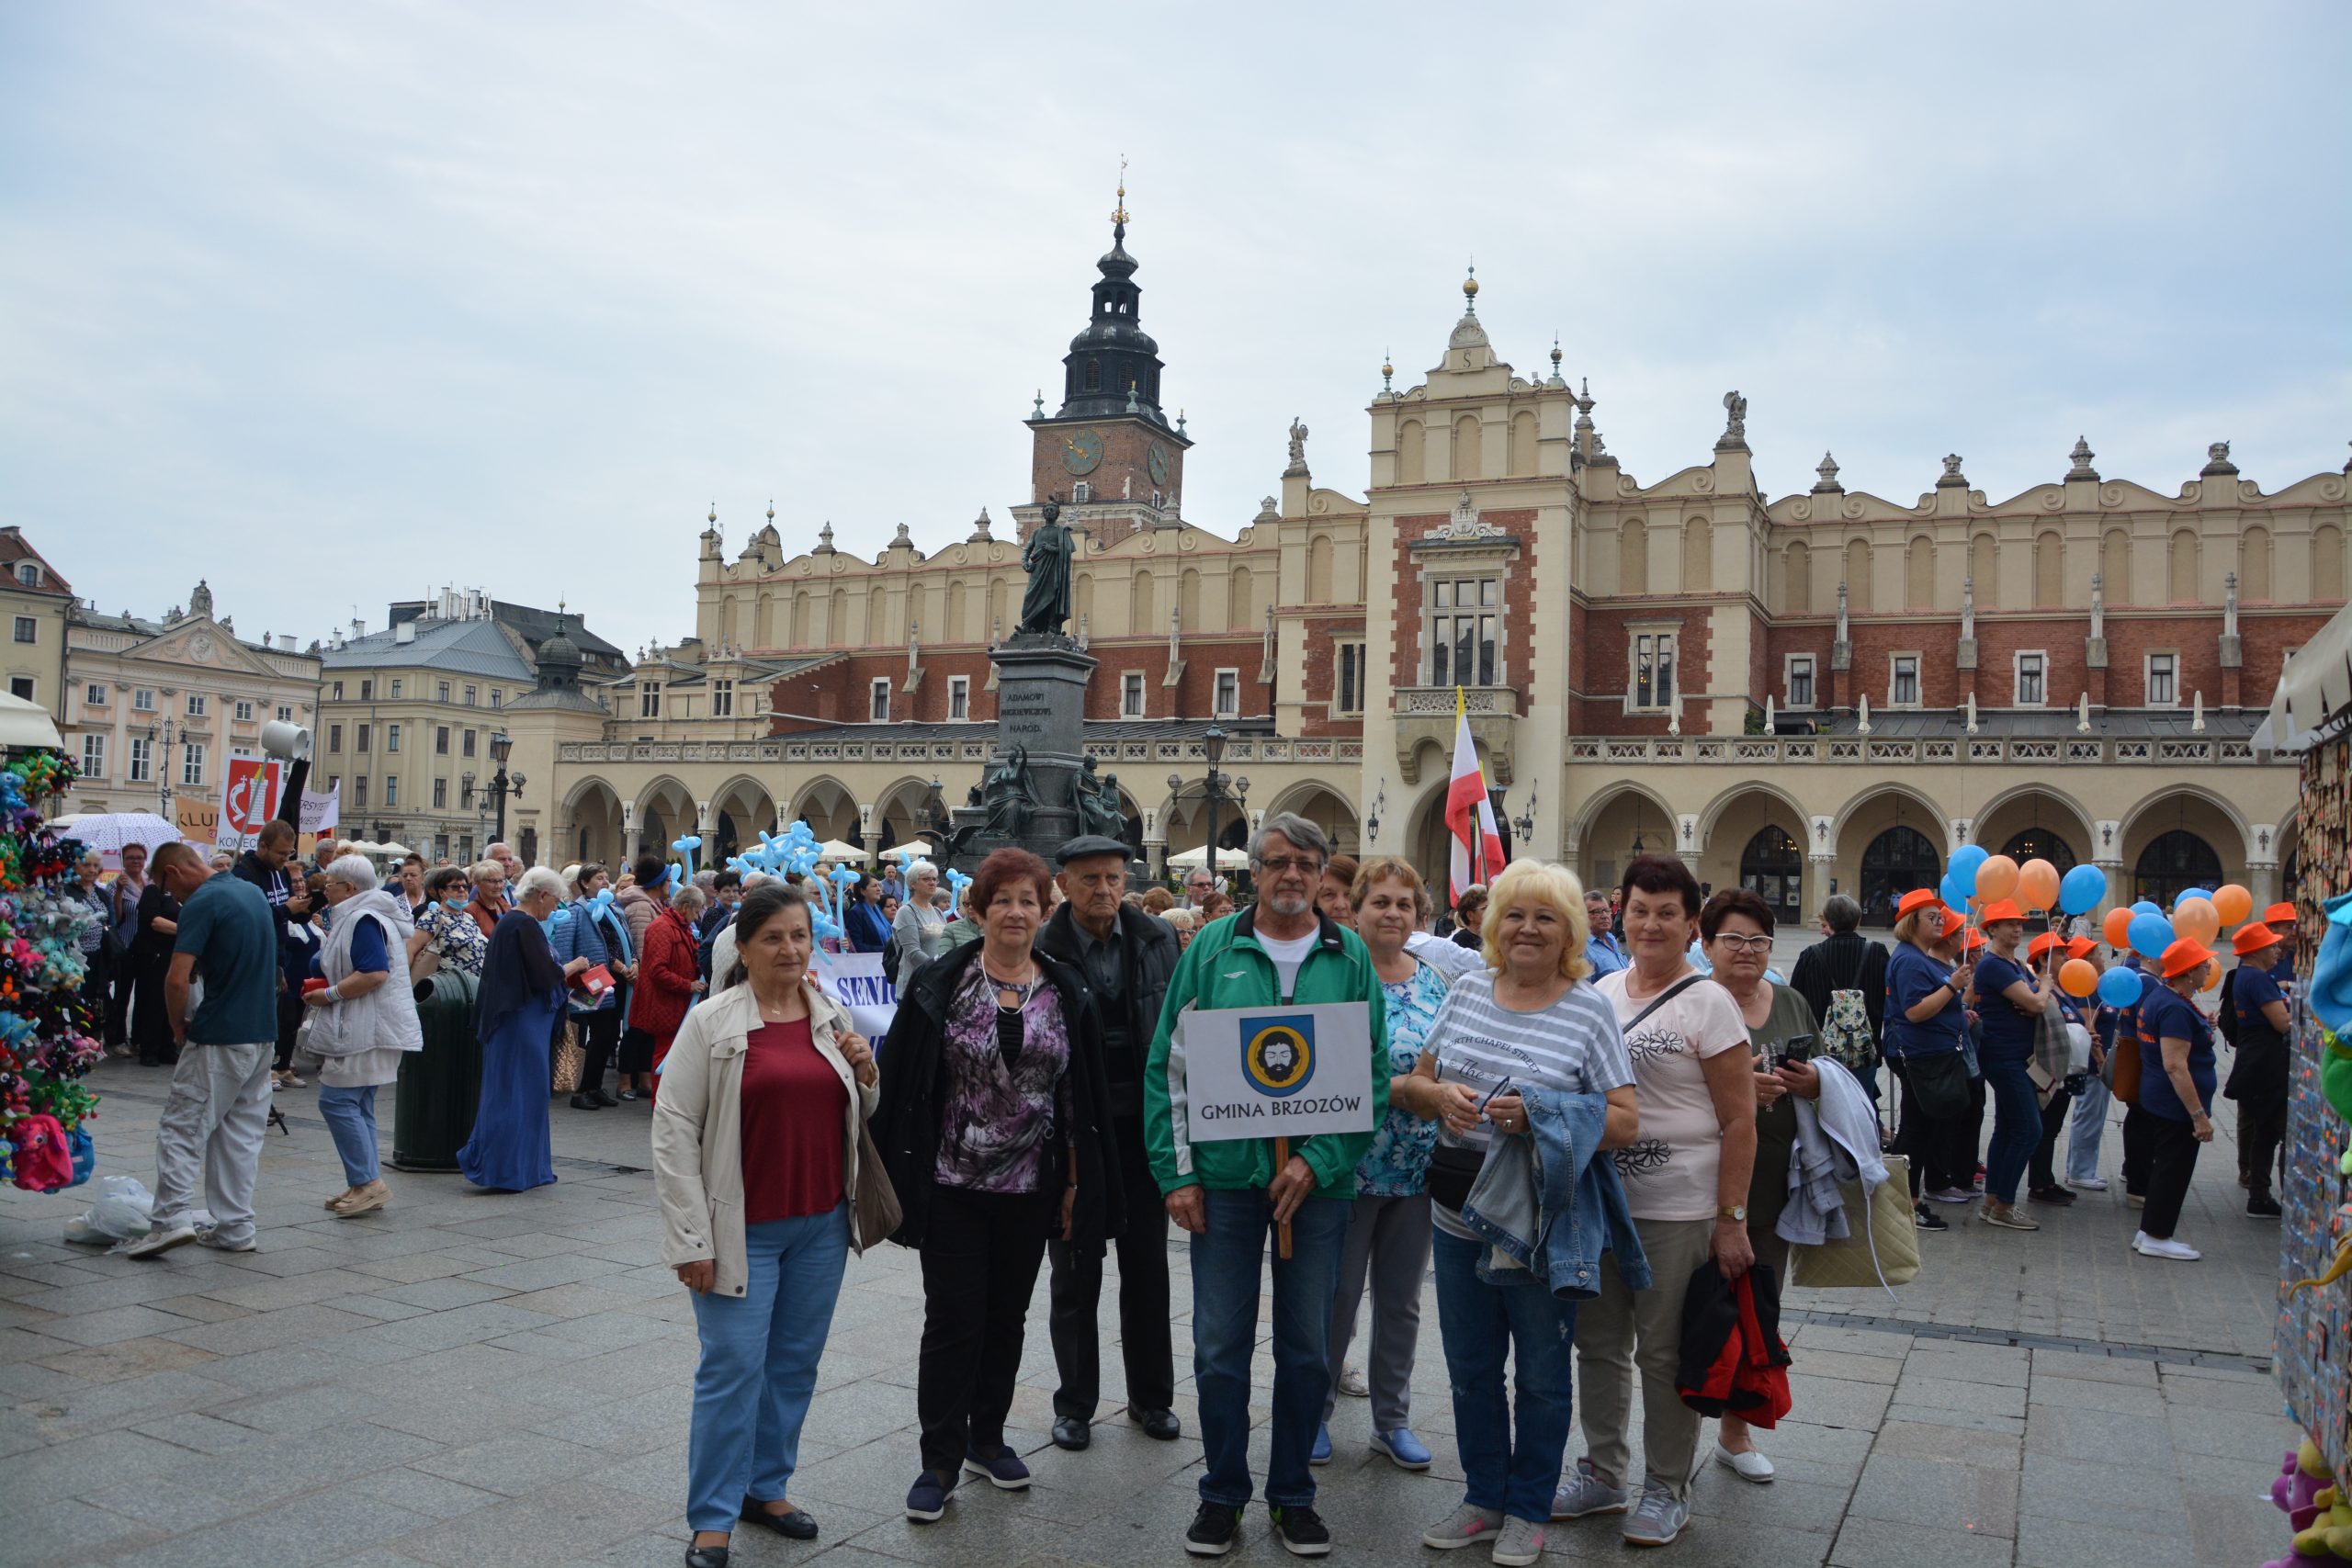 Grupa osób starszych z transparentem Gmina Brzozów, pozuje do zdjęcia na tle kamieniczek i parady w Krakowie. Za nimi panie trzymają balony, inni ubrani są w jednakowe stroje. .